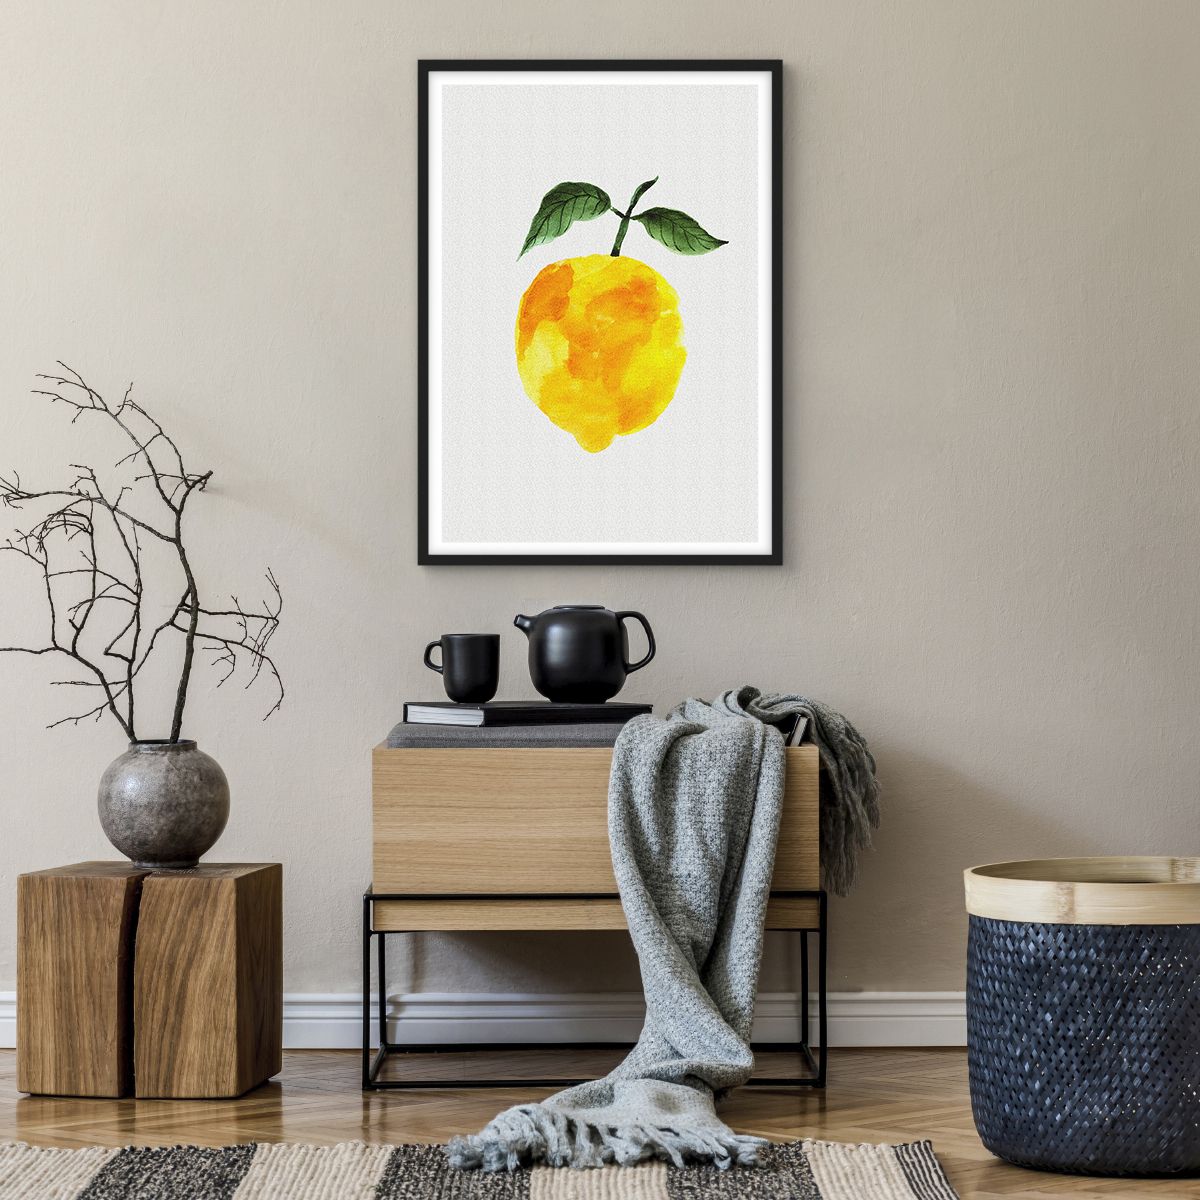 Poster in einem schwarzem Rahmen Zitrone, Poster in einem schwarzem Rahmen Küche, Poster in einem schwarzem Rahmen Obst